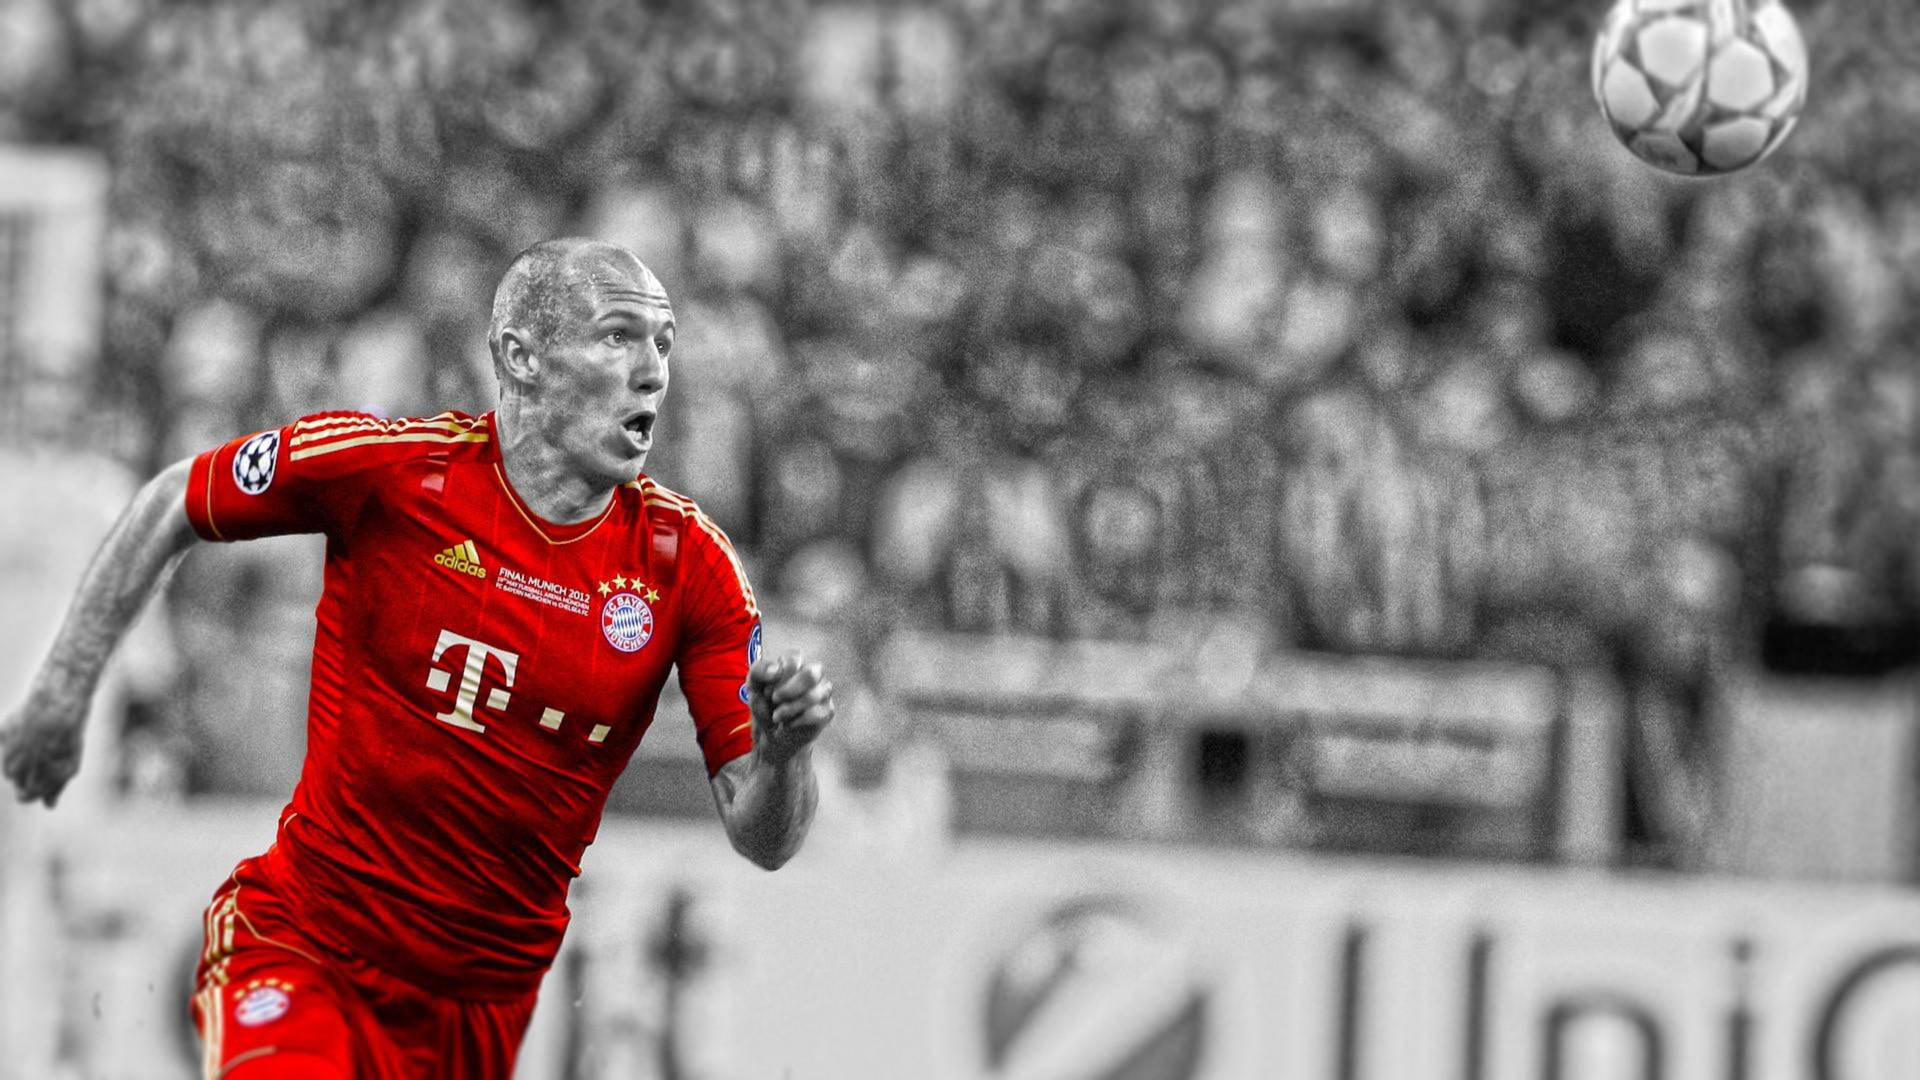 Bayern Munich Robben Red Jersey Background